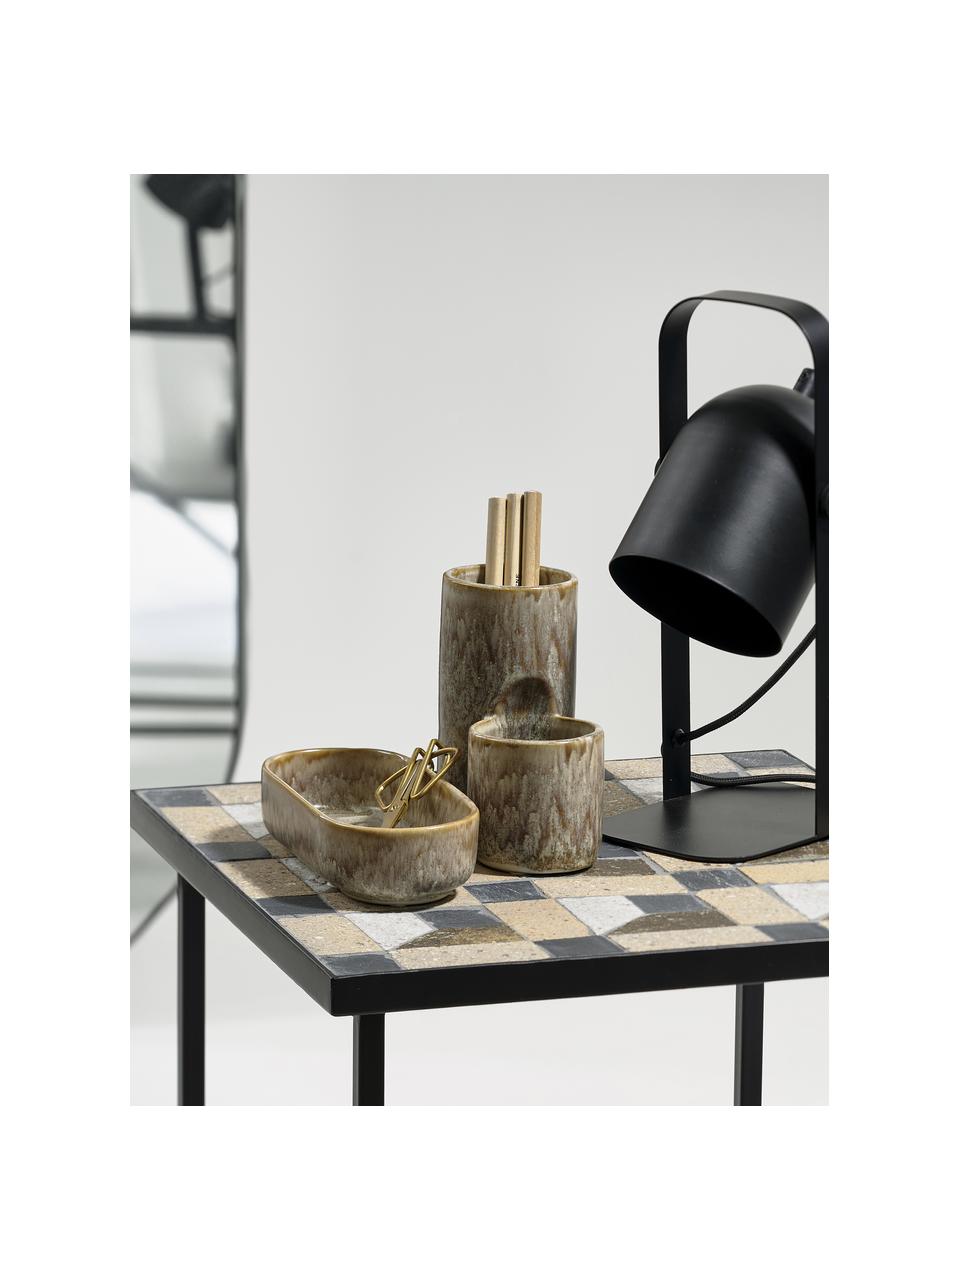 Lampada da tavolo orientabile Nesvik, Lampada: ferro rivestito, Nero, Larg. 11 x Alt. 29 cm